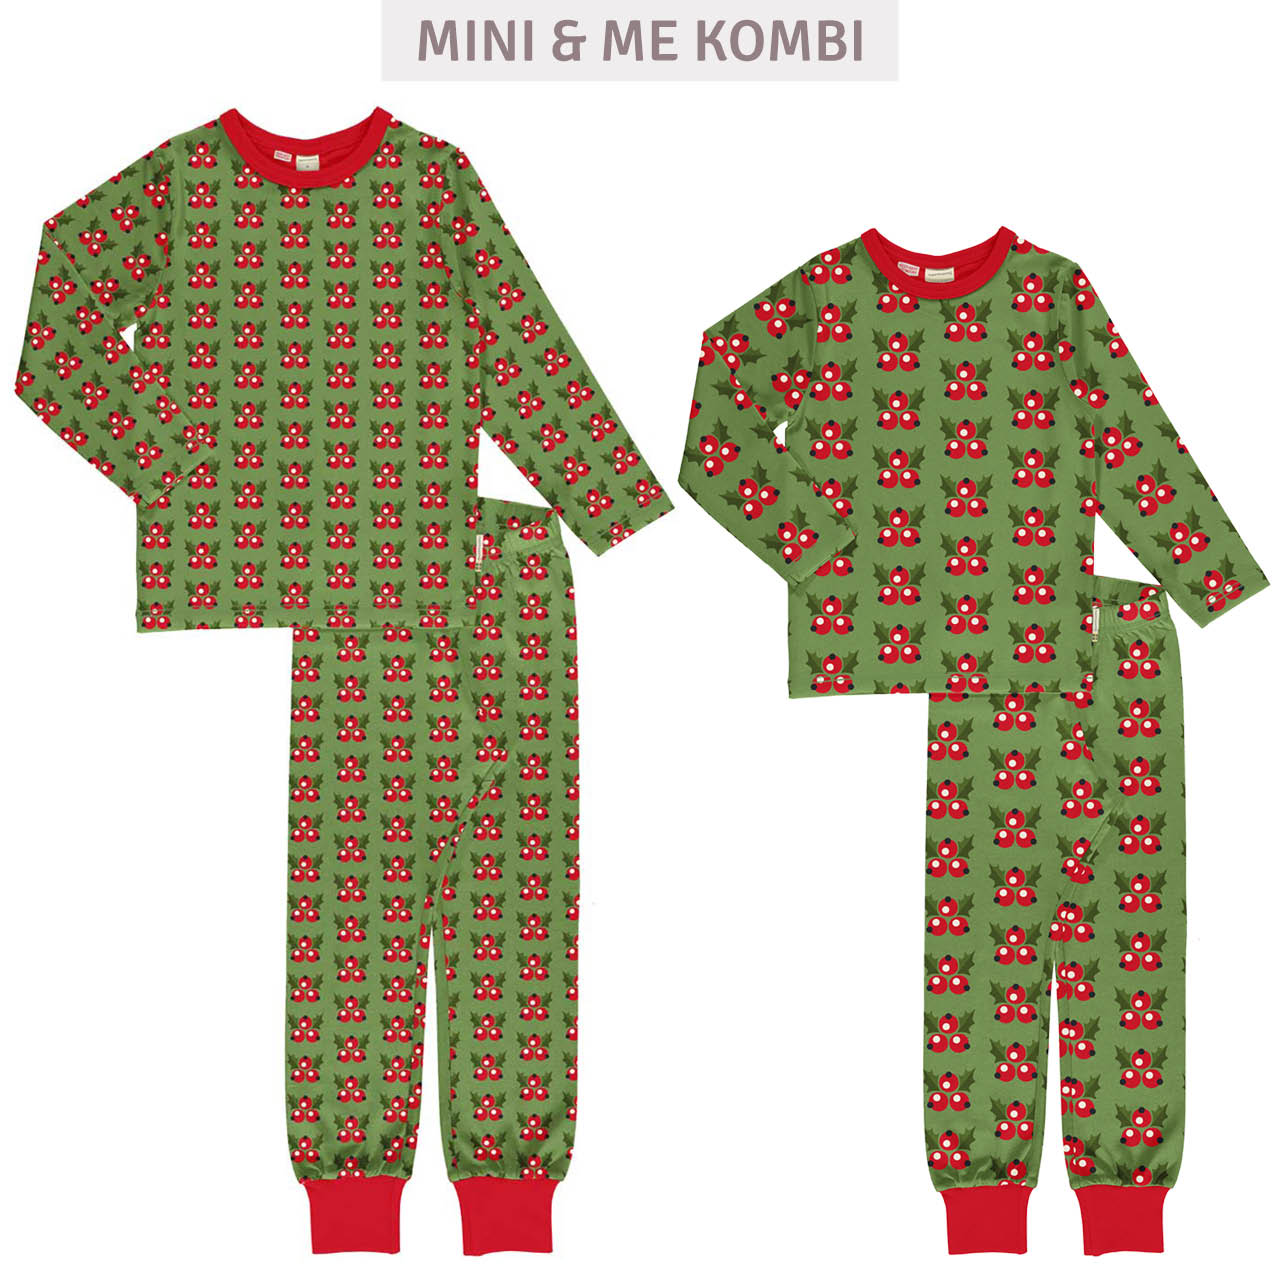 Erwachsenen Schlafanzug langarm weihnachtlich grün